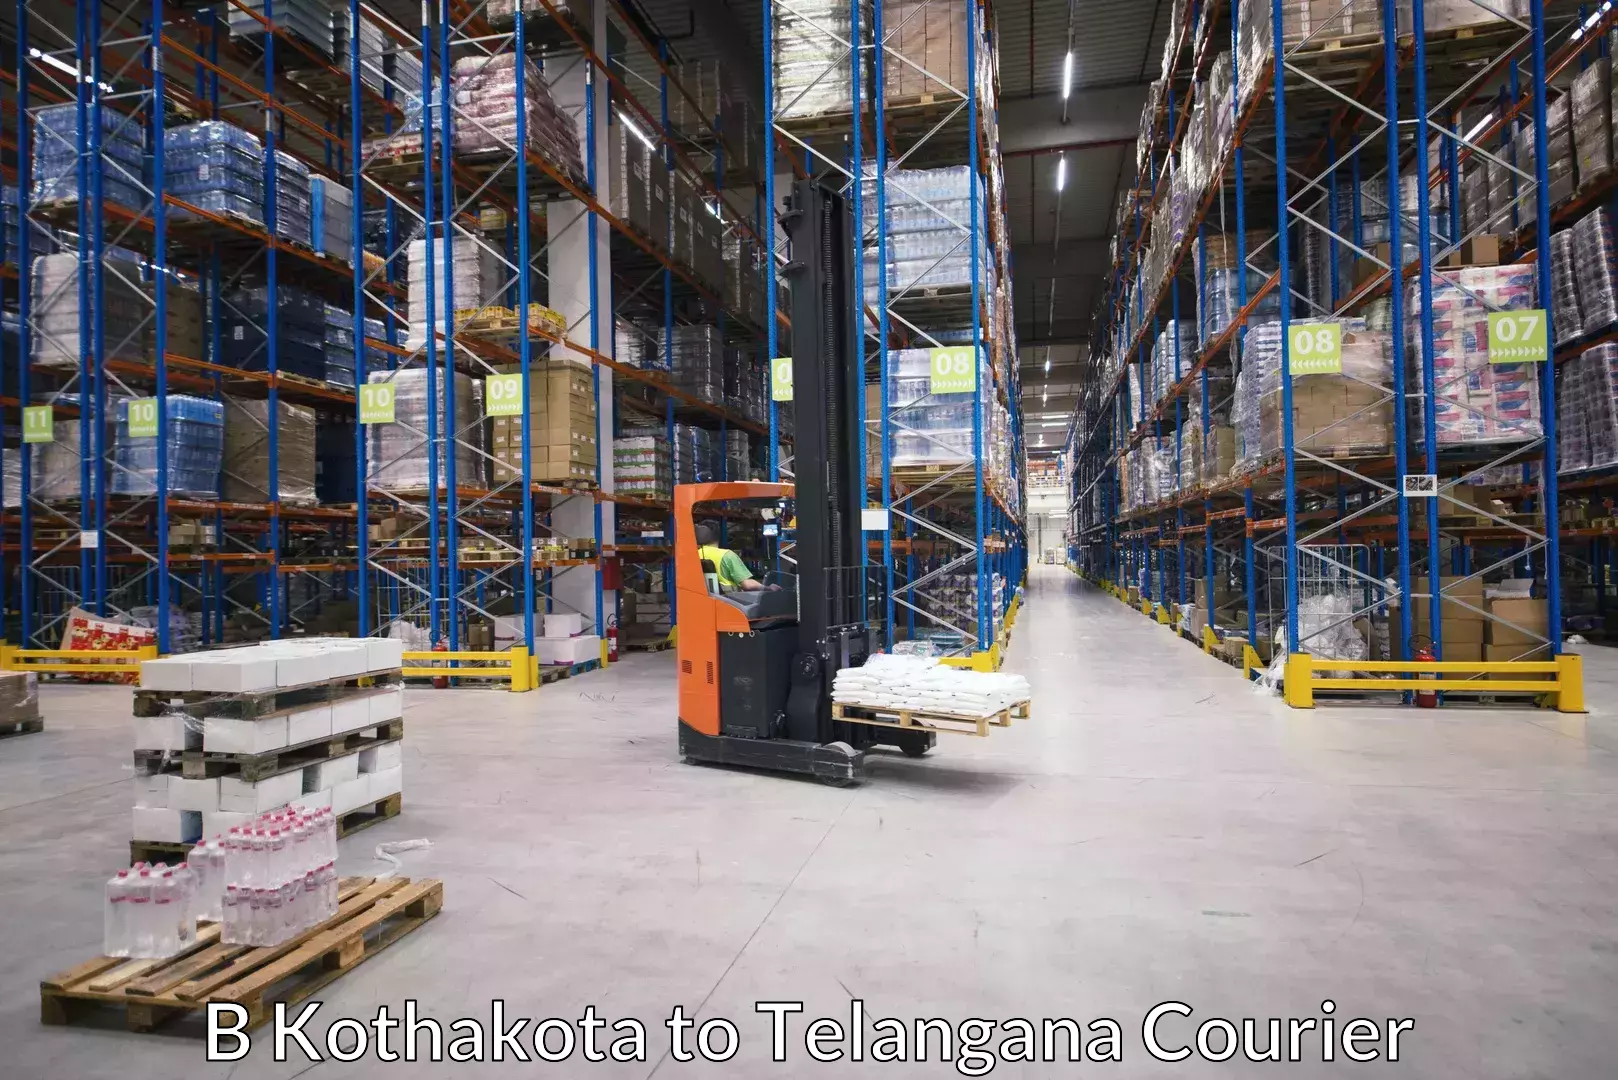 Nationwide furniture transport B Kothakota to Telangana